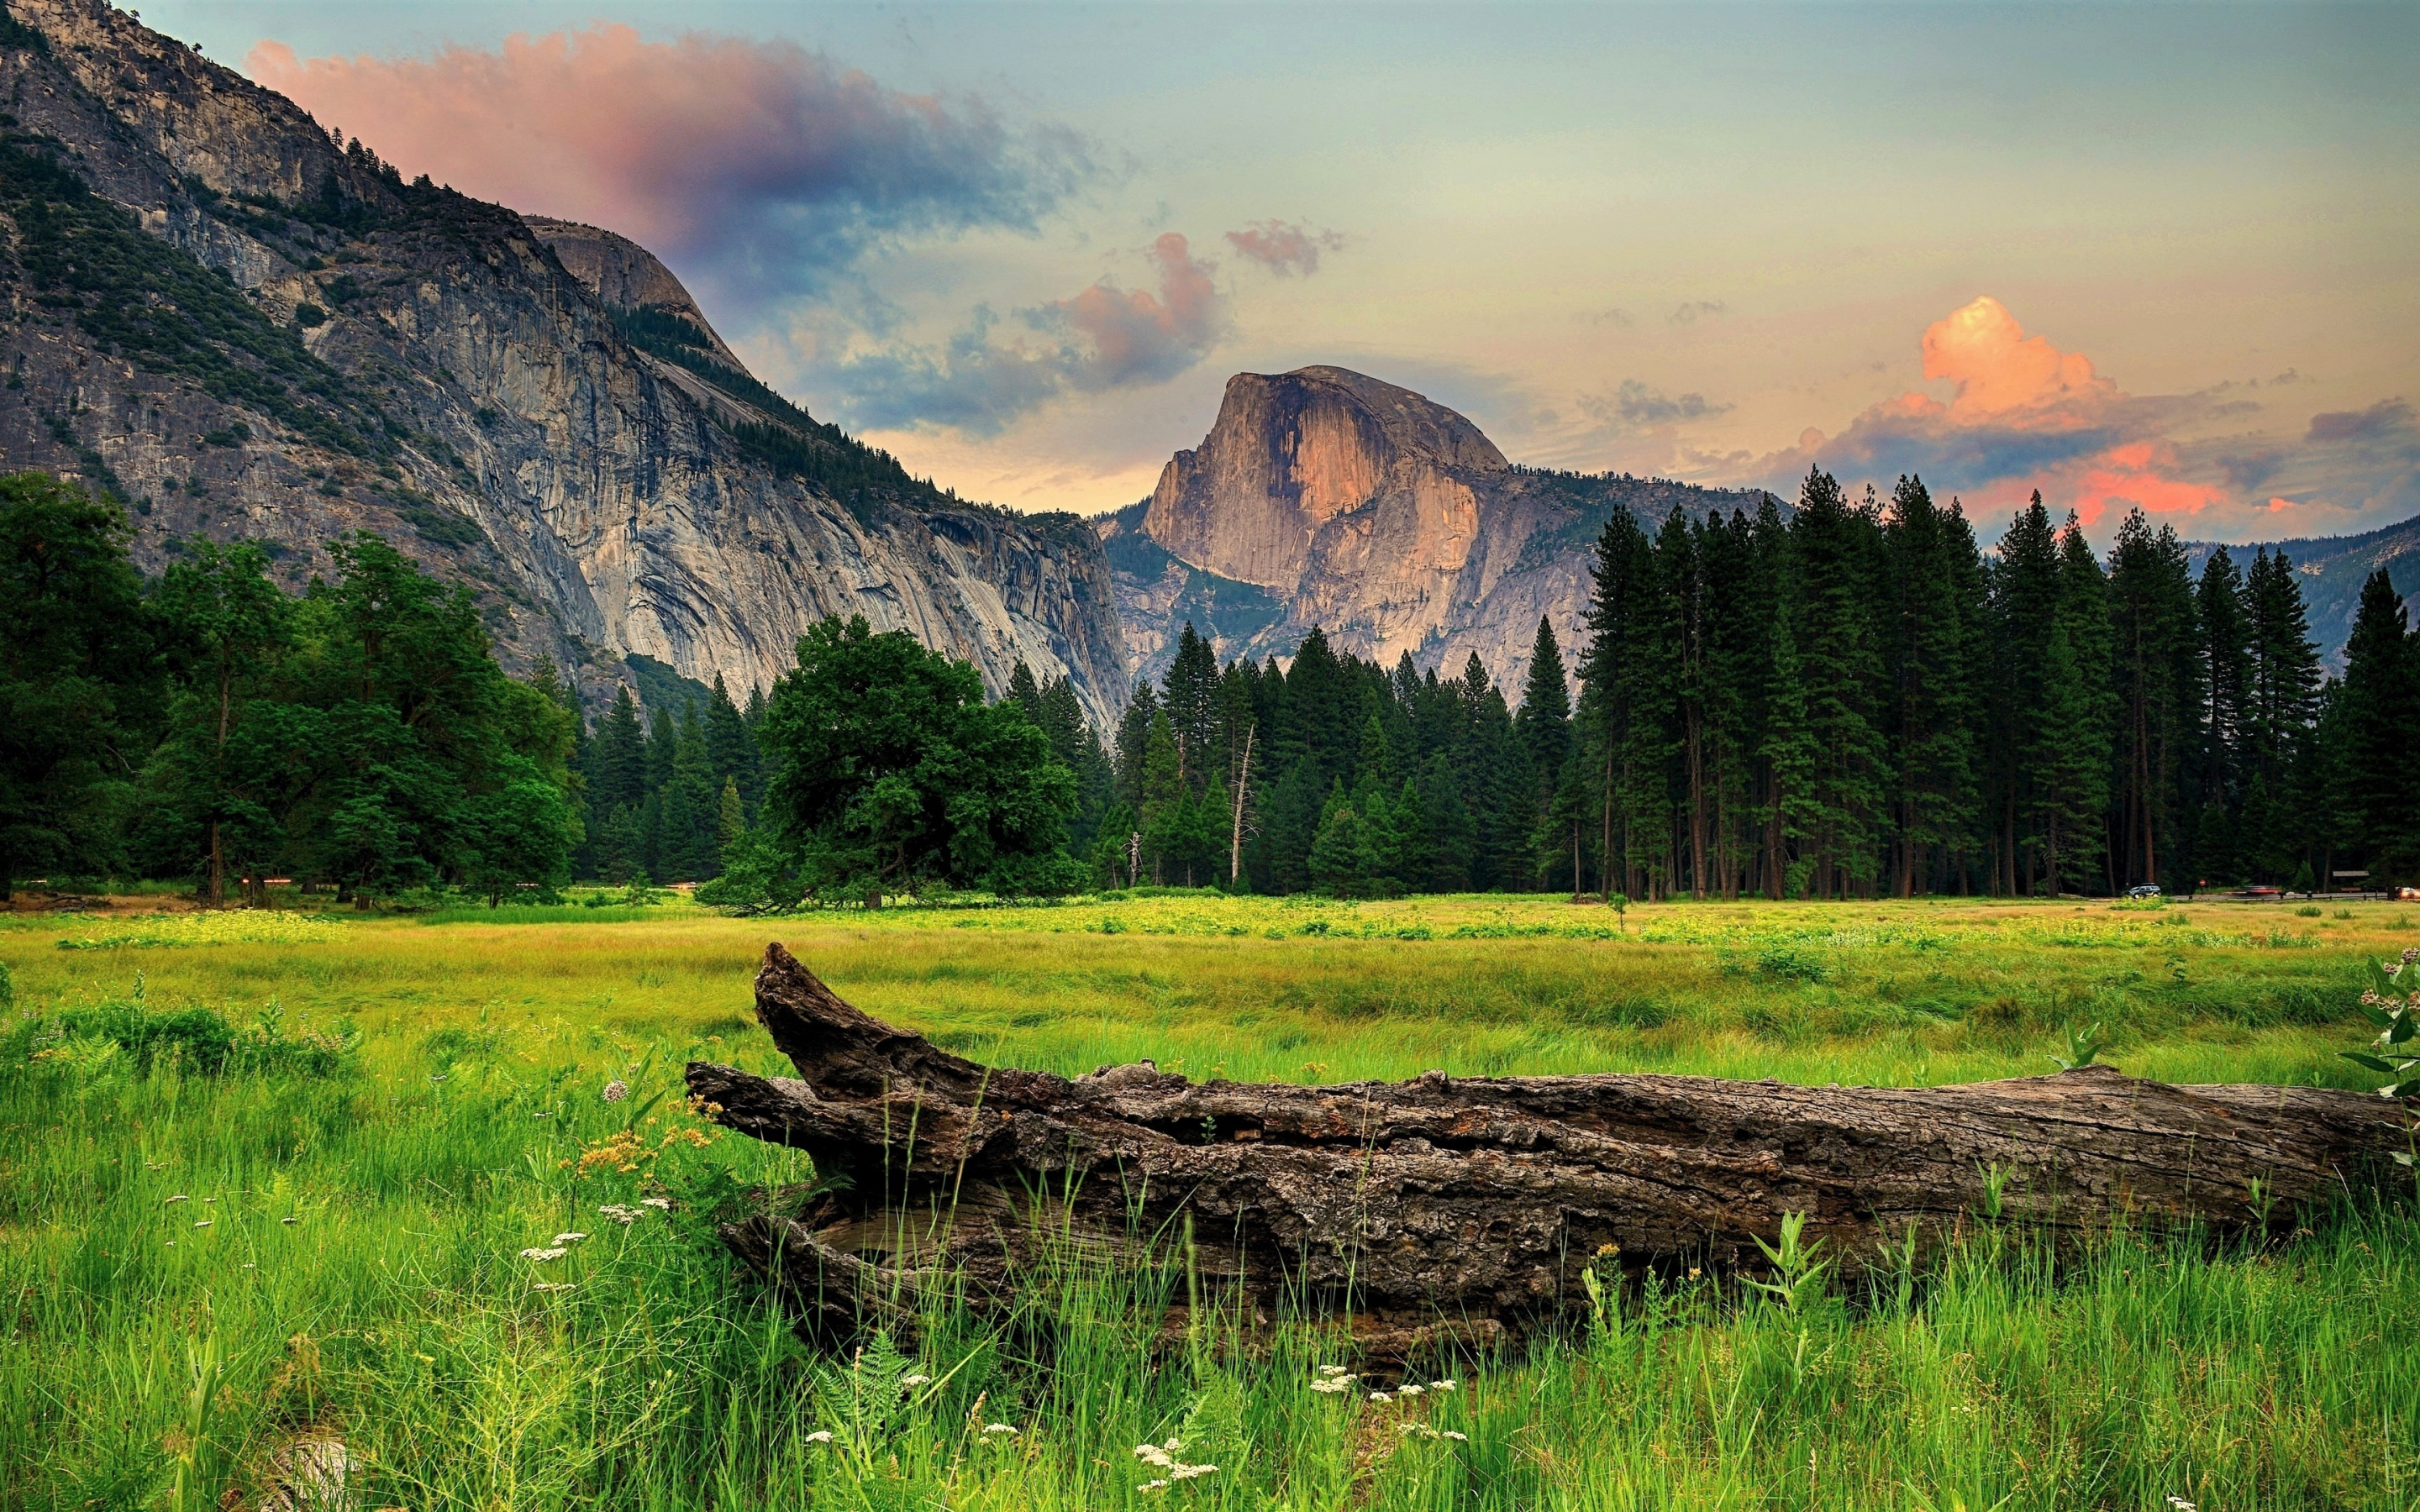 Tree trunk, landscape, half dome, Yosemite valley, 2880x1800 wallpaper